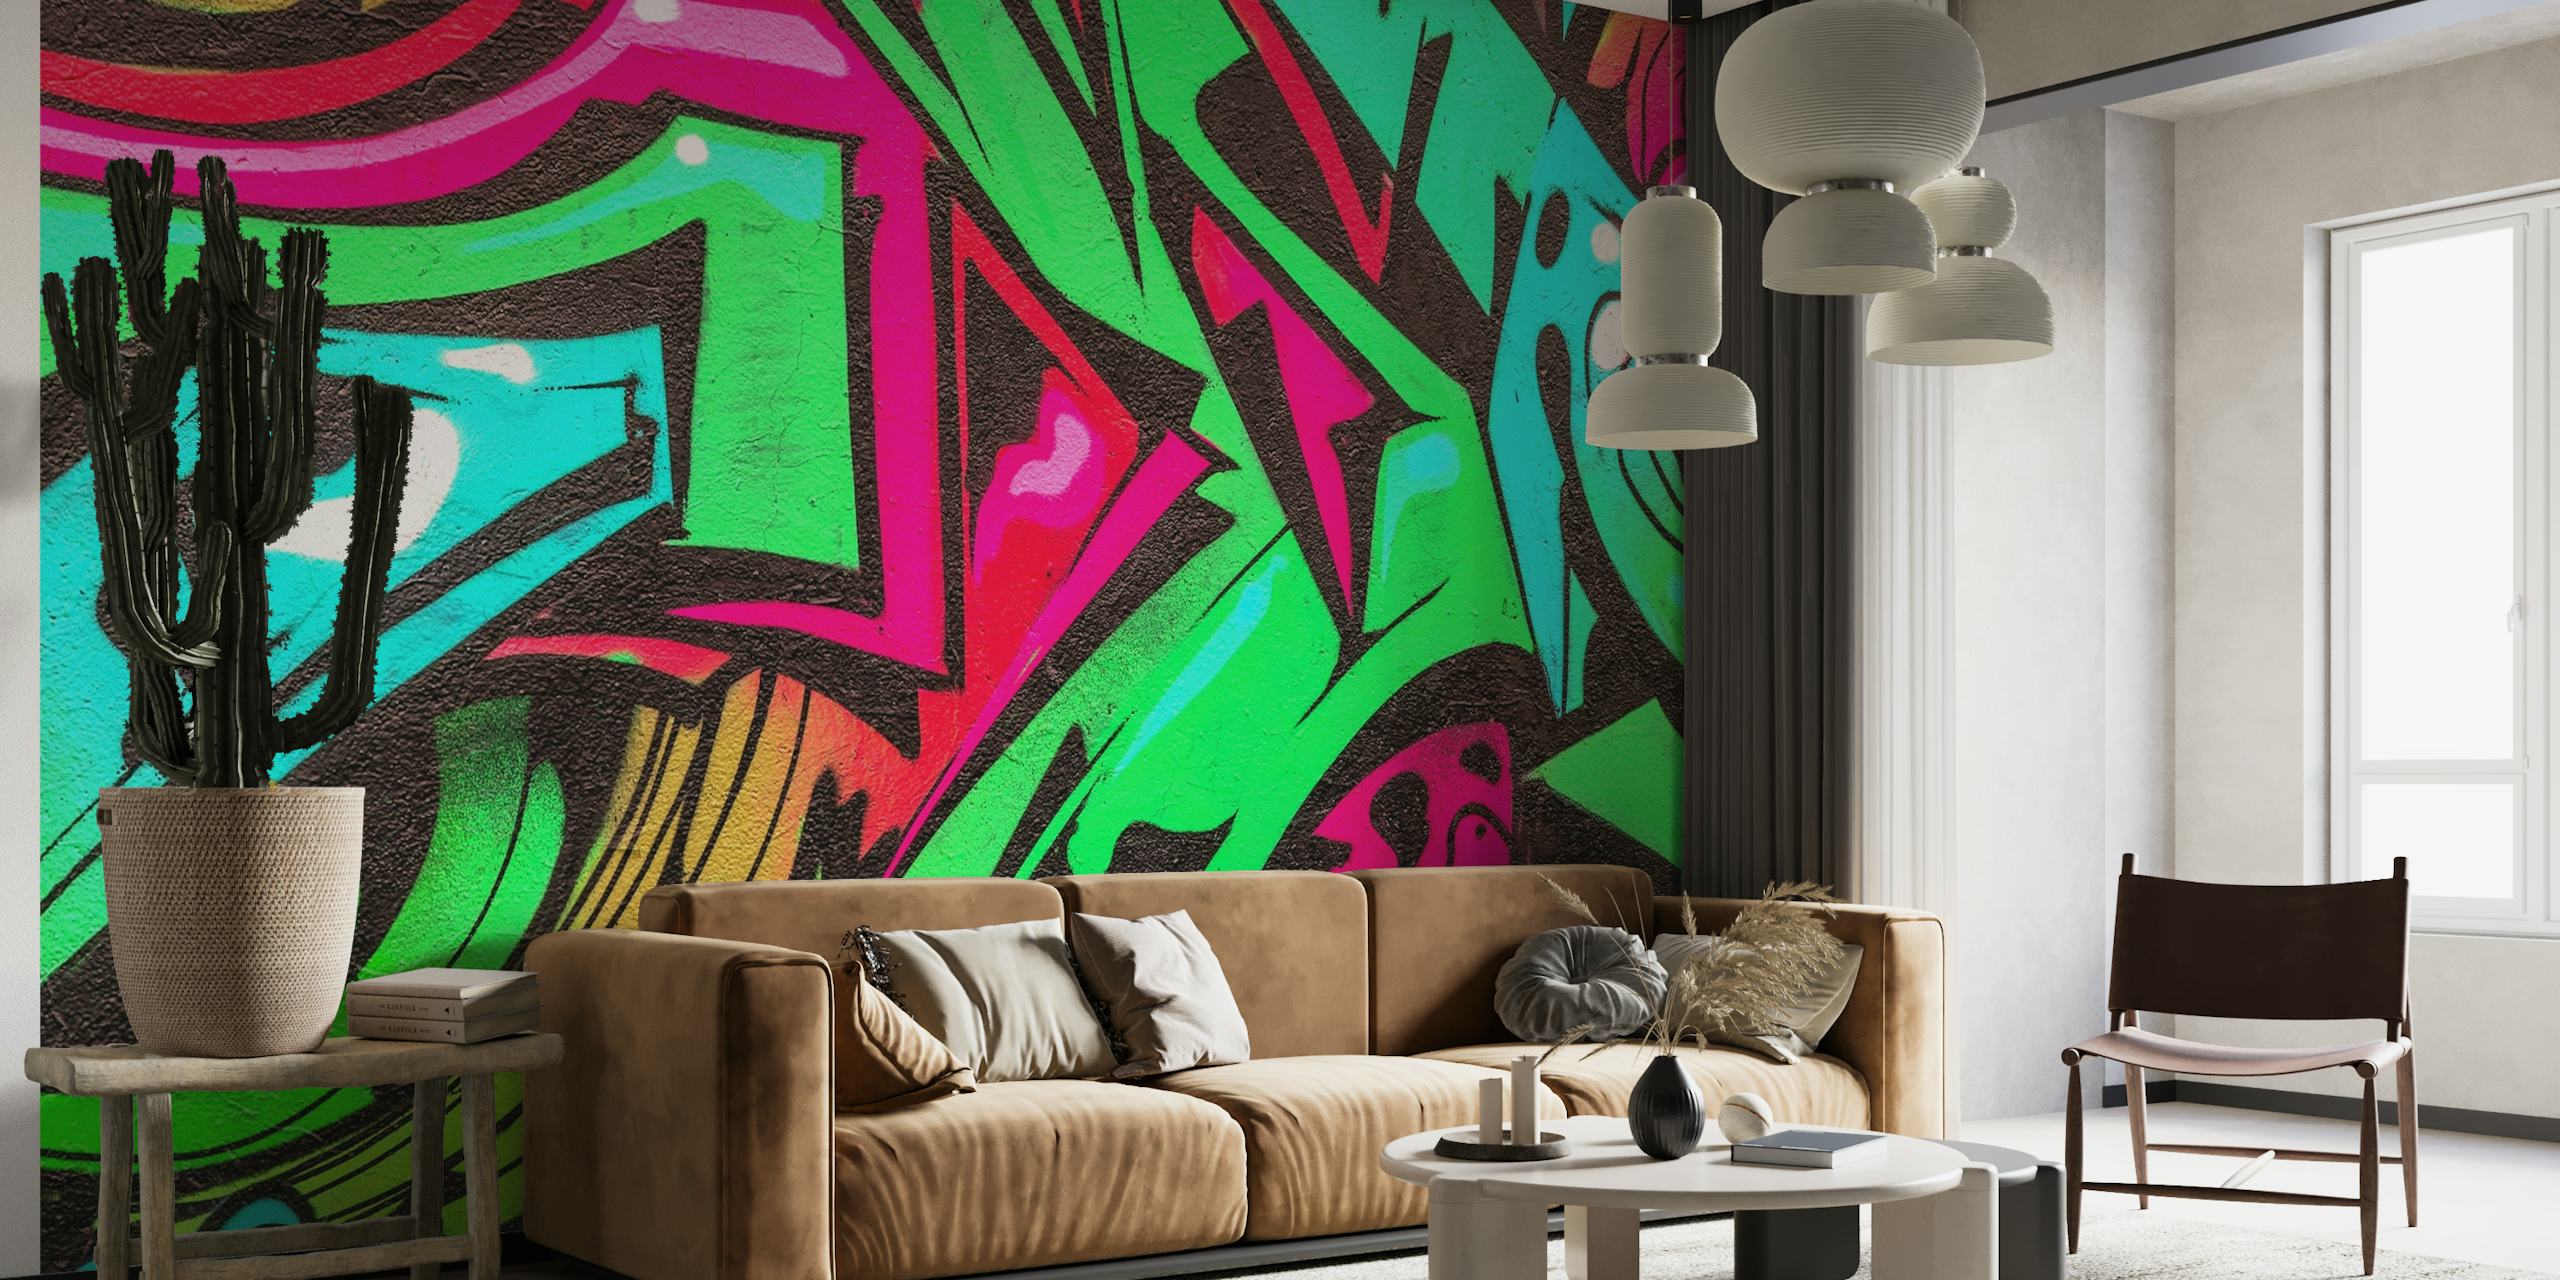 Barevná graffiti nástěnná malba se zářivými odstíny zelené, růžové a tyrkysové